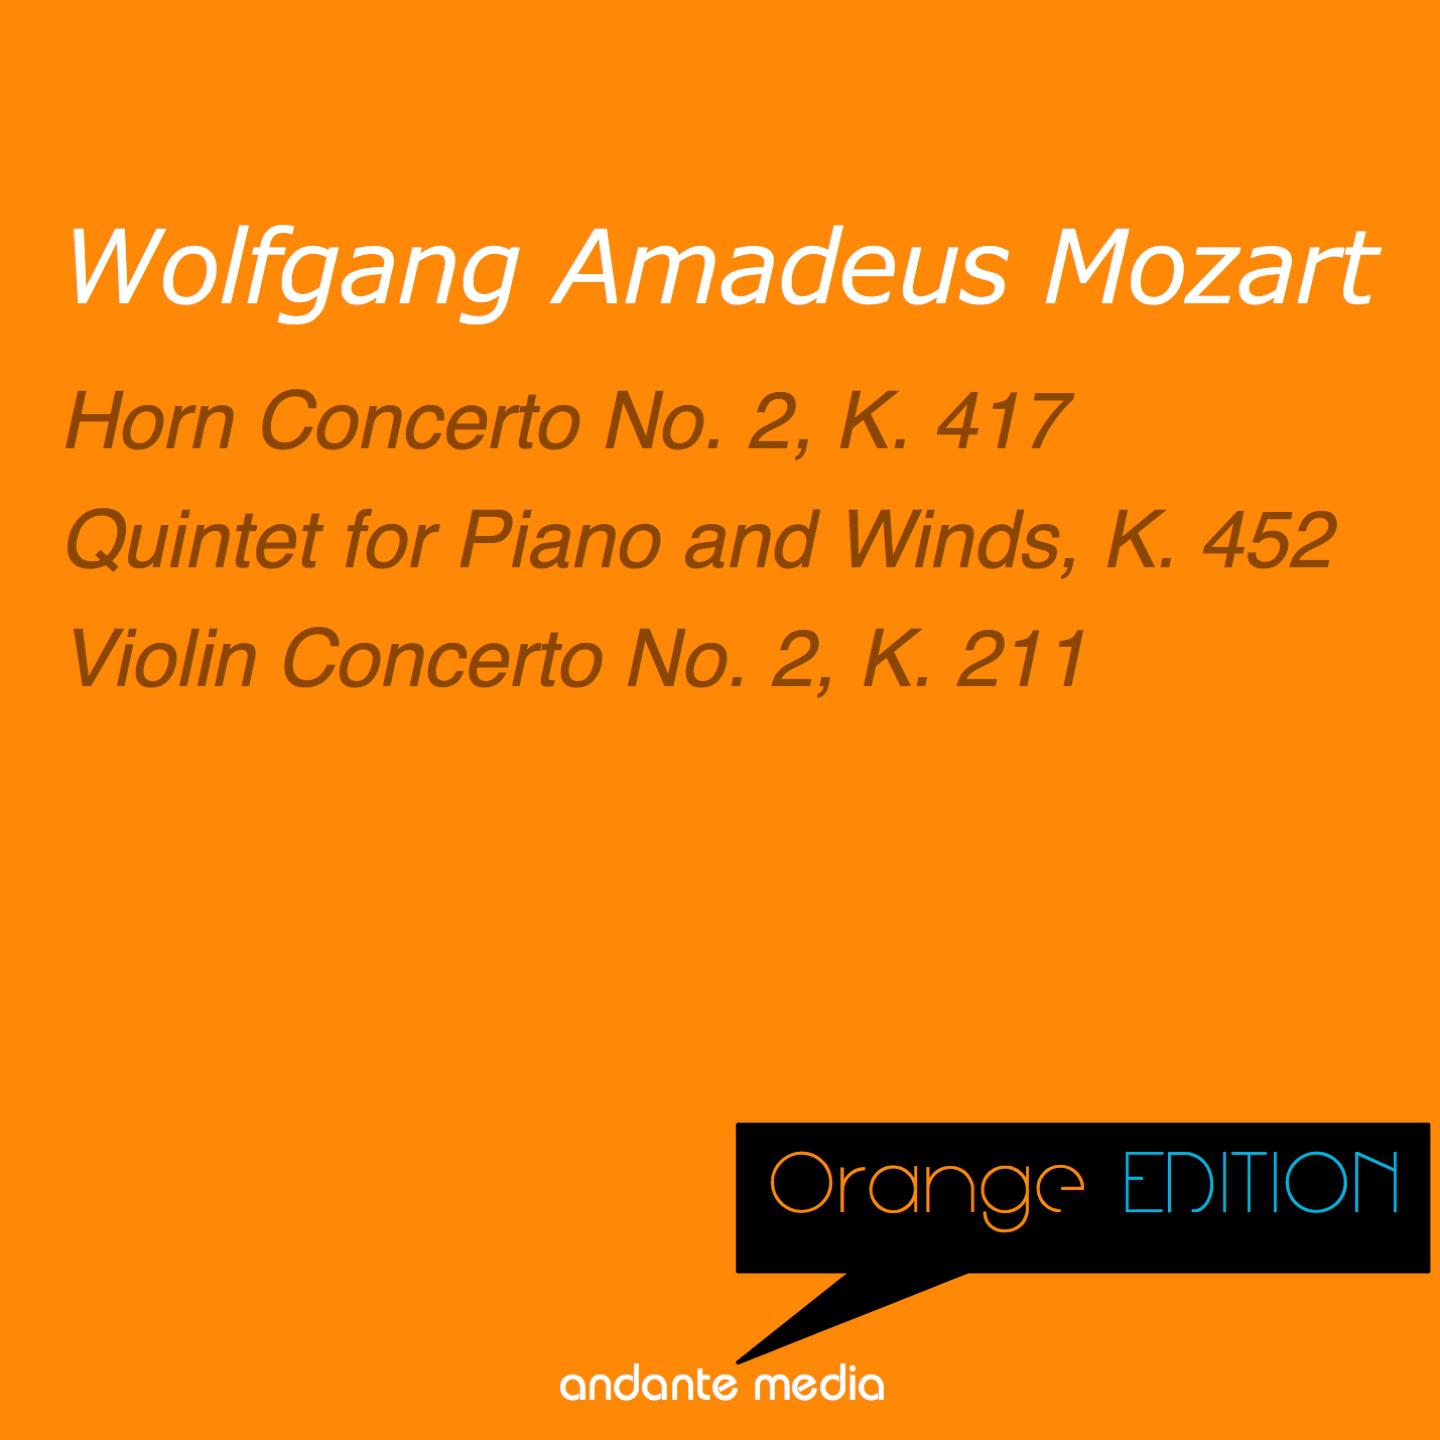 Orange Edition - Mozart: Horn Concerto No. 2, K. 417 & Violin Concerto No. 2, K. 211